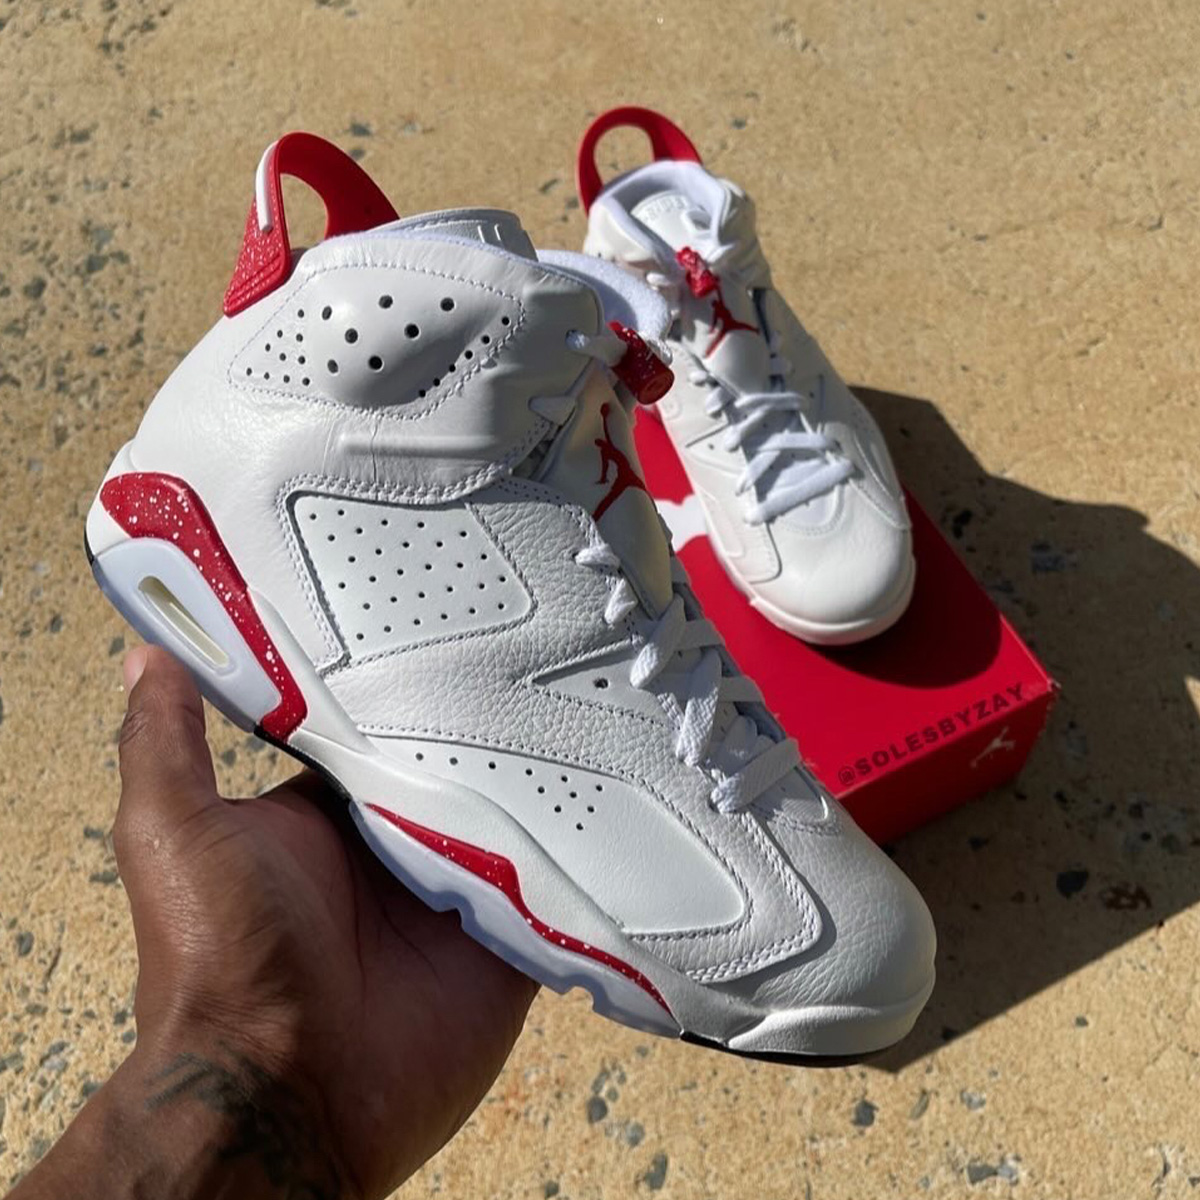 Air Jordan 6 Red Oreo CT8529-162 Release Date - Sneaker Bar Detroit